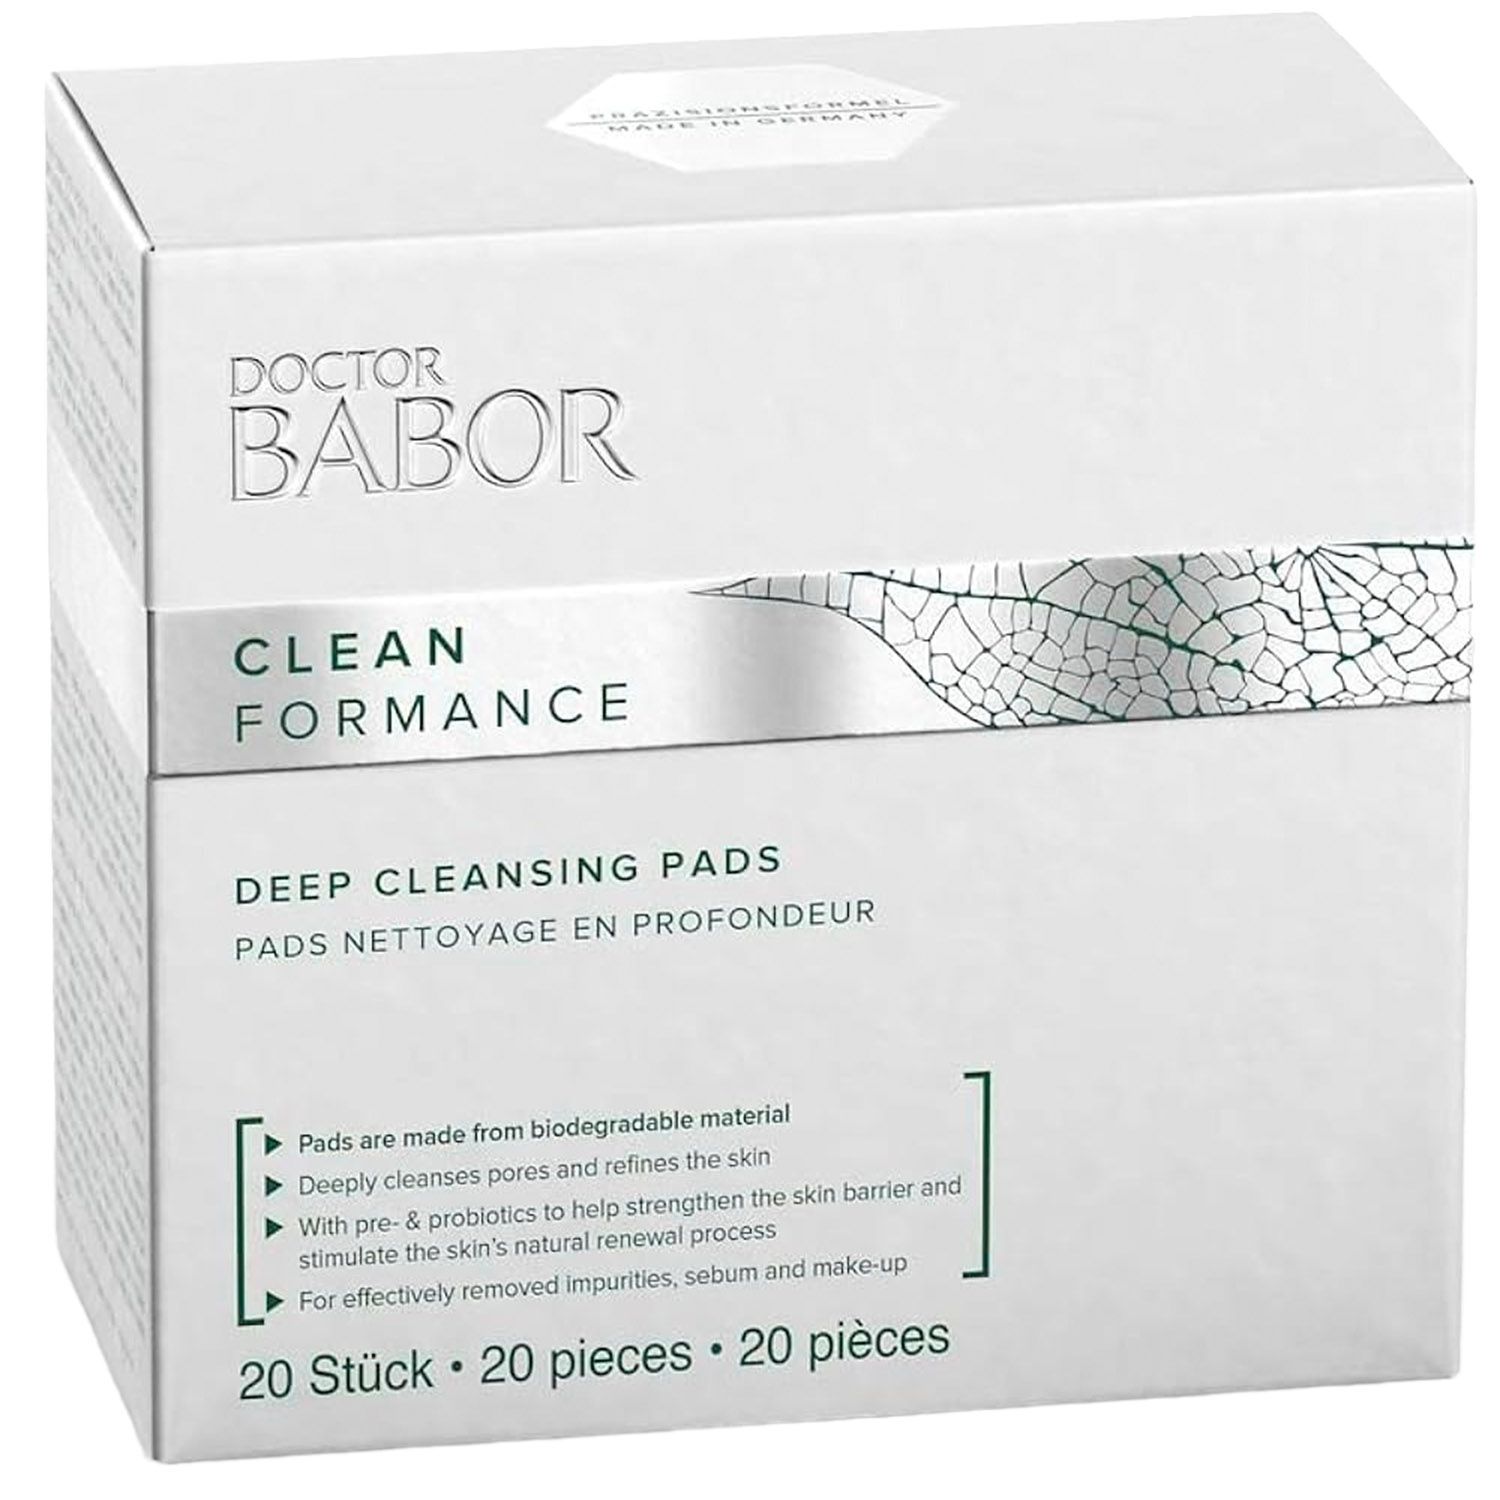 Пады для глубокого очищения кожи Babor Doctor Babor Clean Formance Deep Cleansing Pads, 20 шт. - фото 2